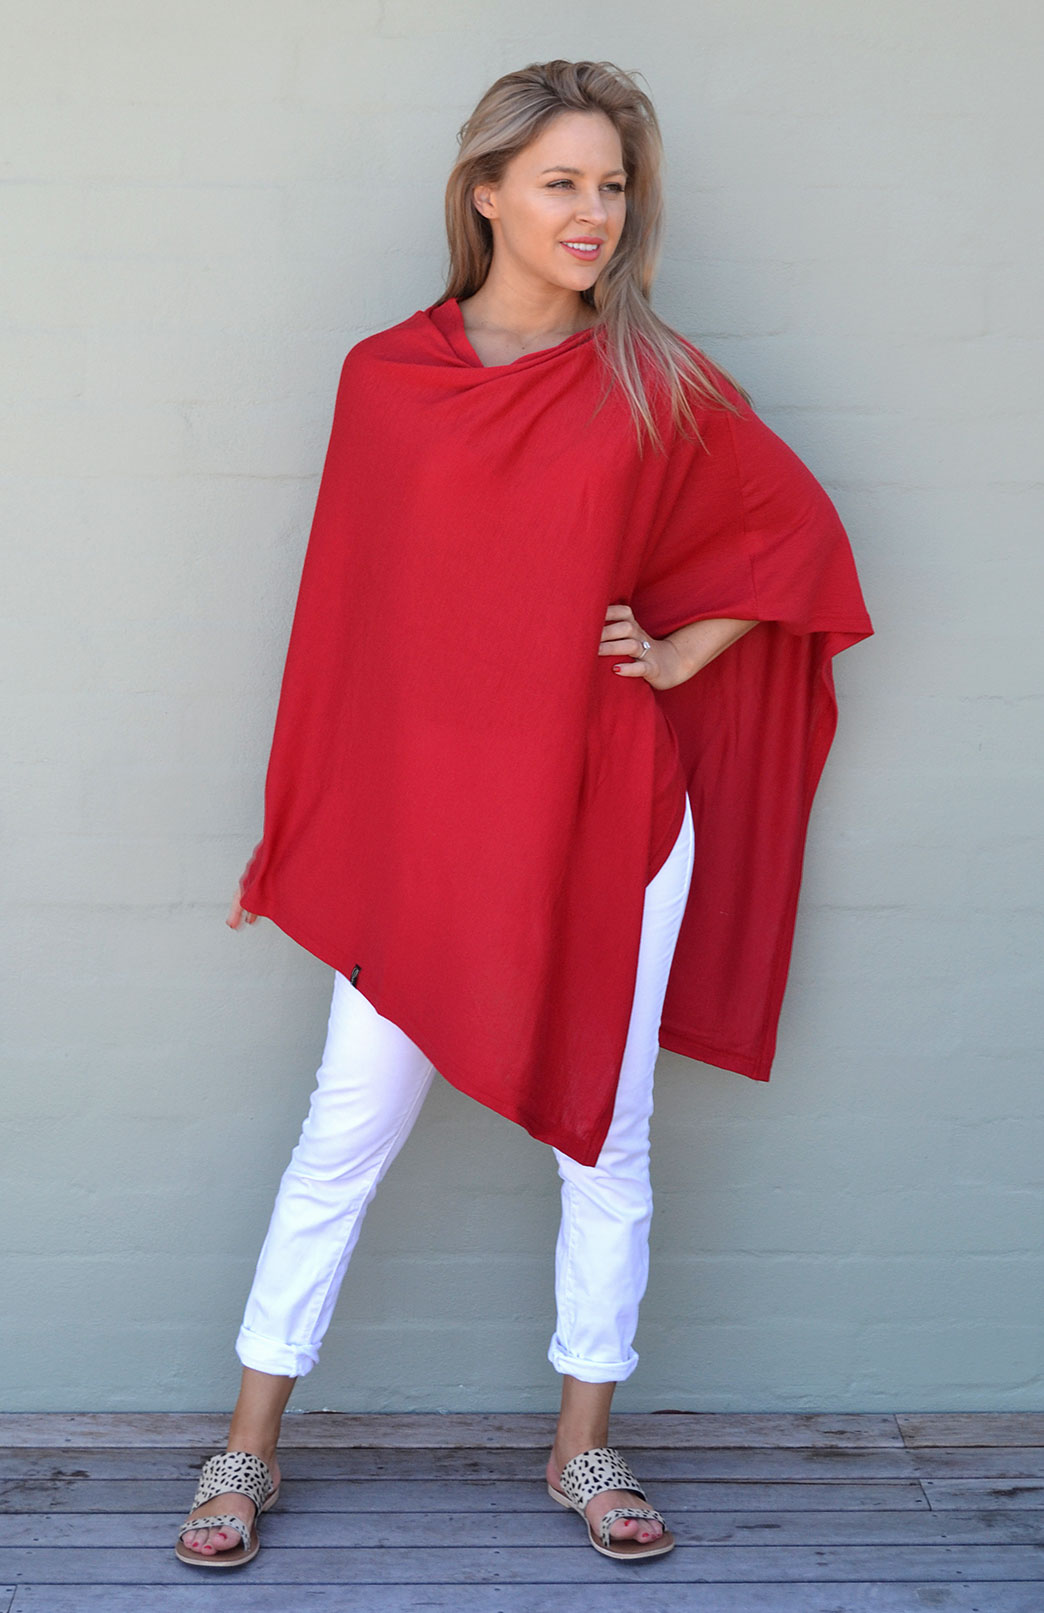 Wool Ponchos for Women | Smitten Merino Tasmania Australia